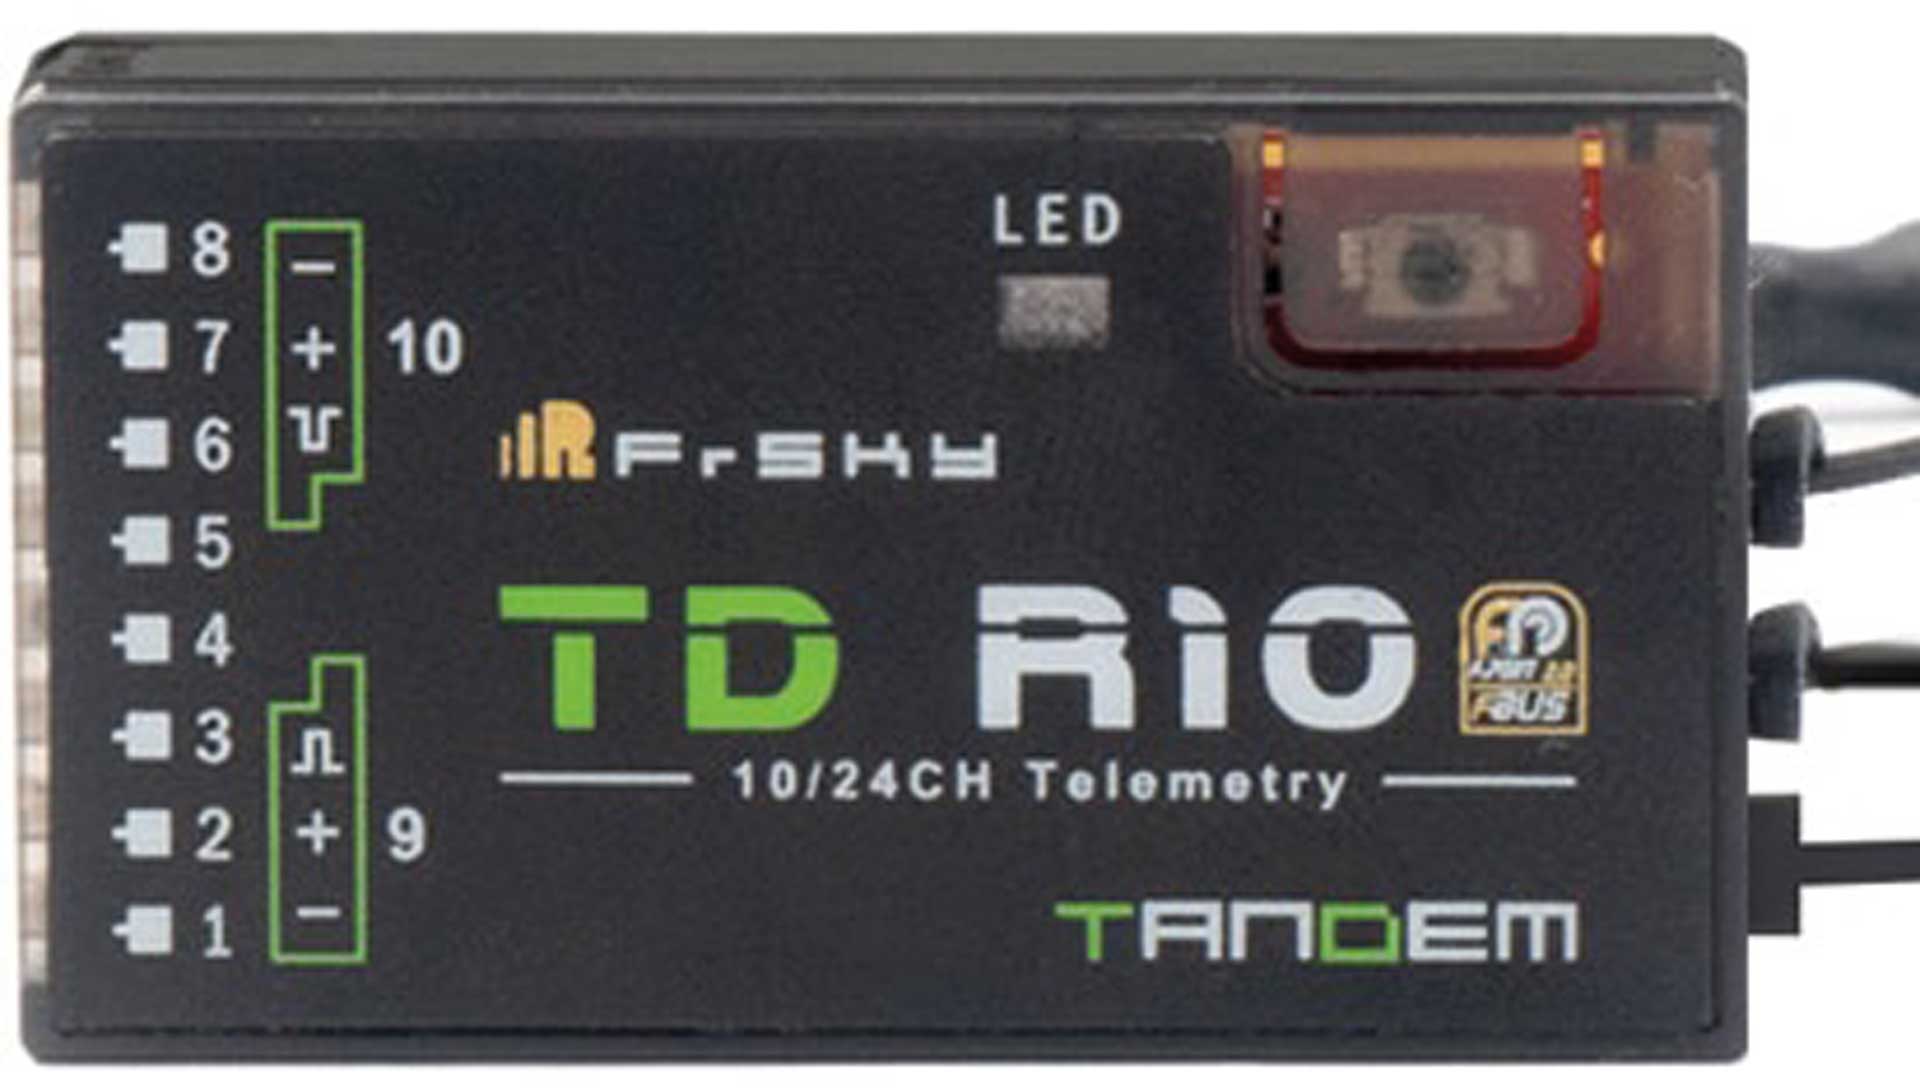 FrSky Tandem Receiver TD-R10 2,4 GHz/868 MHz